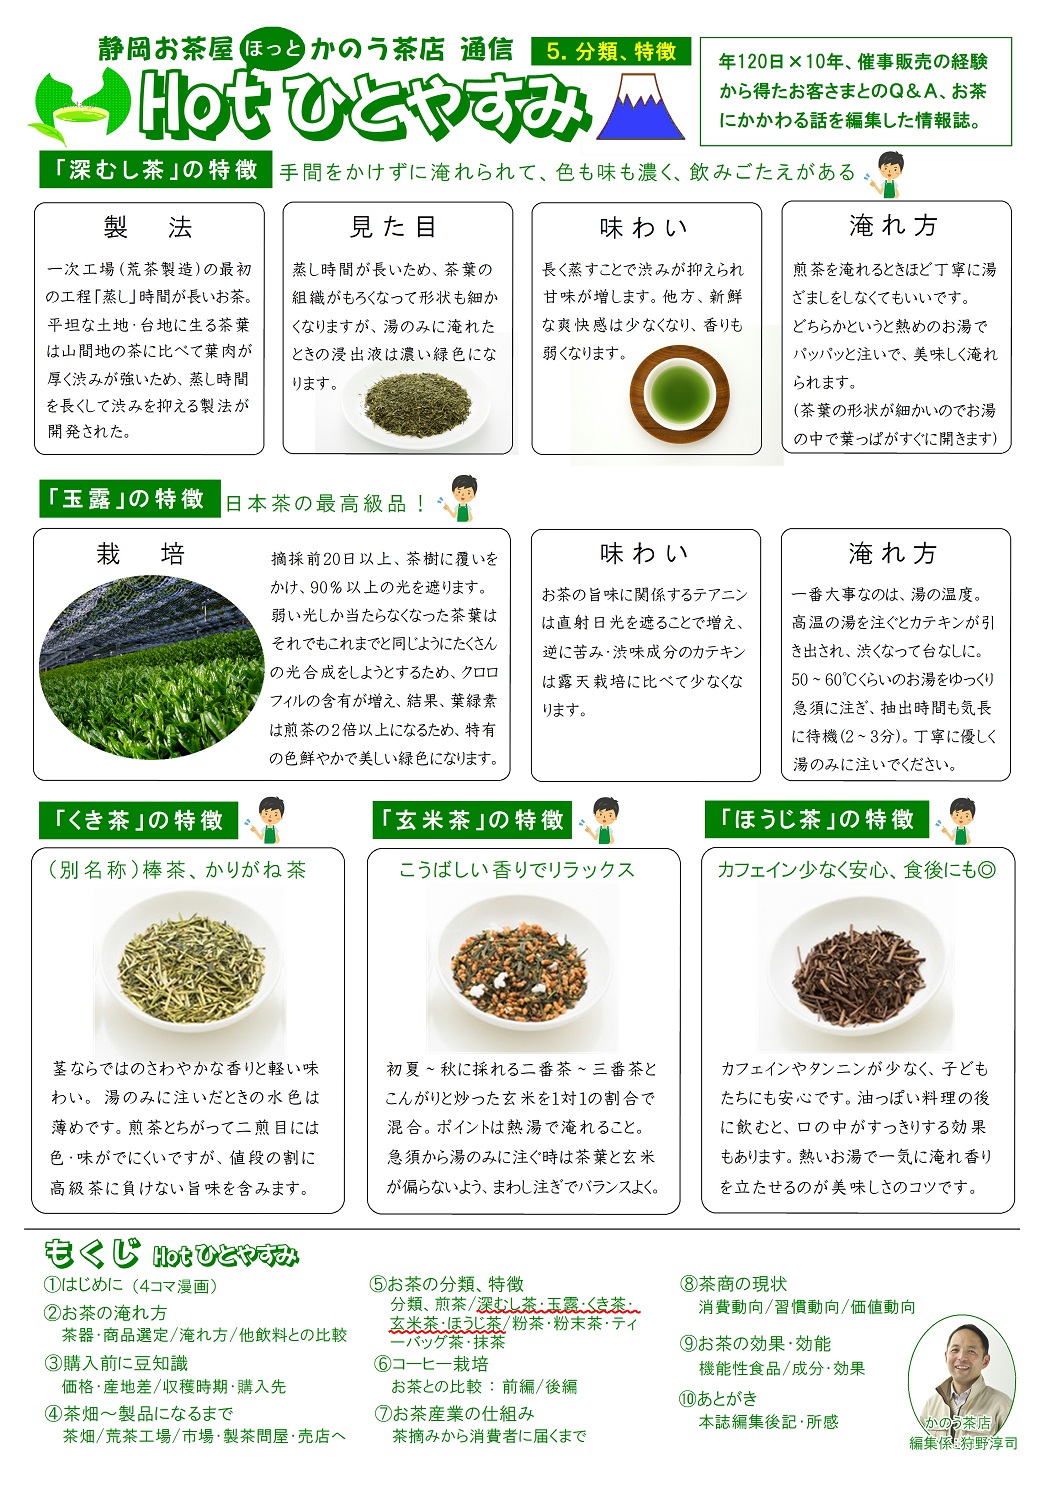 (5)分類･特徴(深むし茶など)